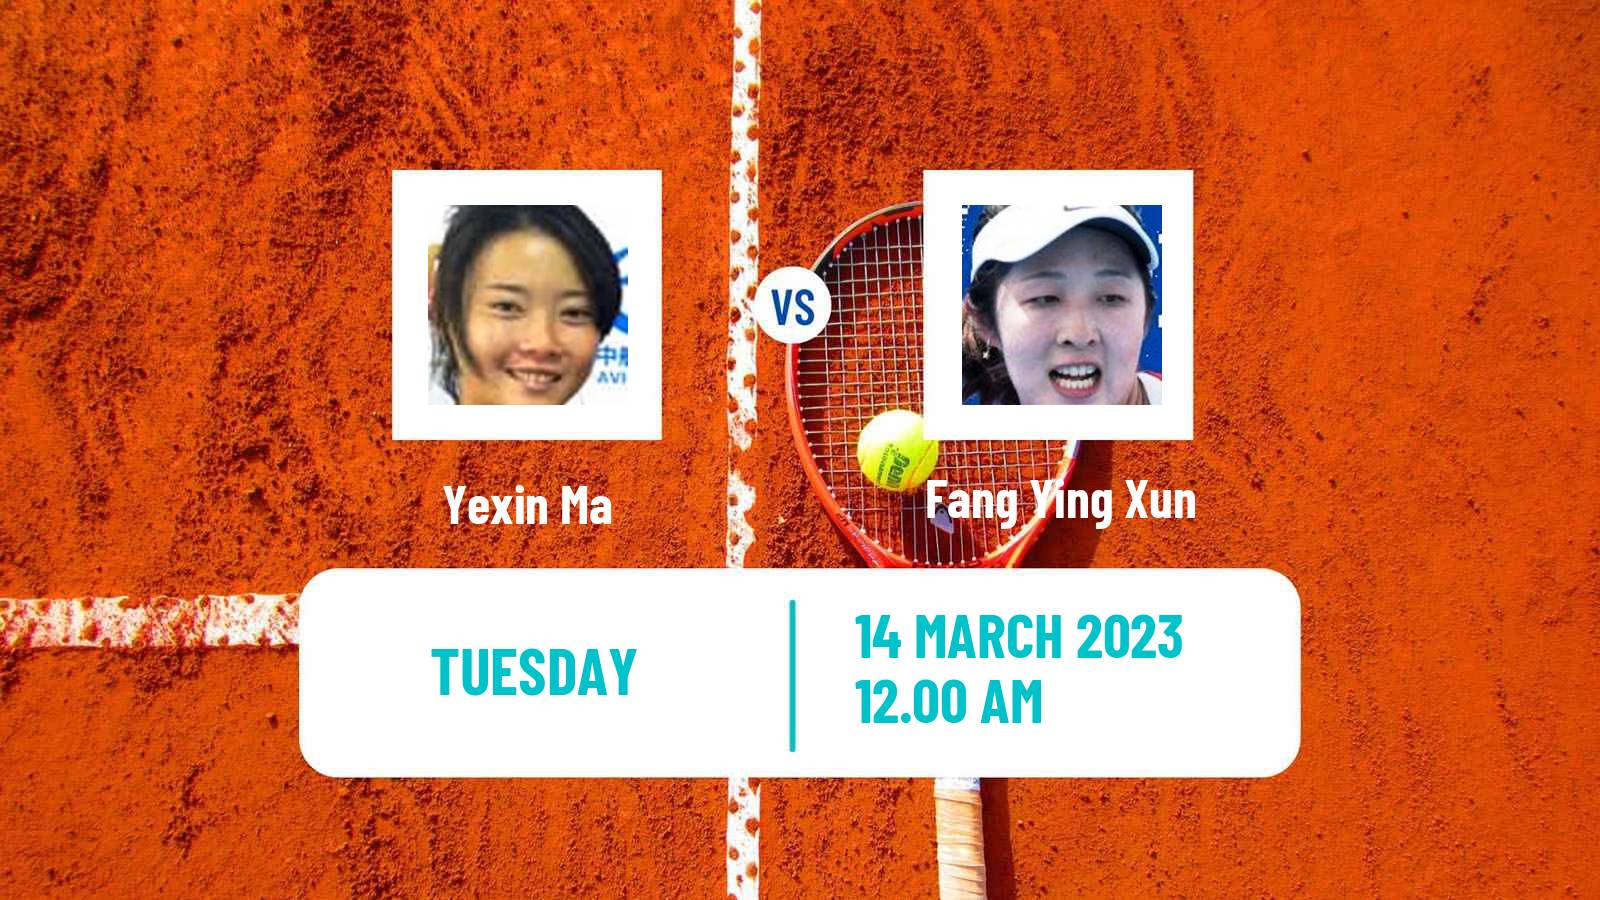 Tennis ITF Tournaments Yexin Ma - Fang Ying Xun